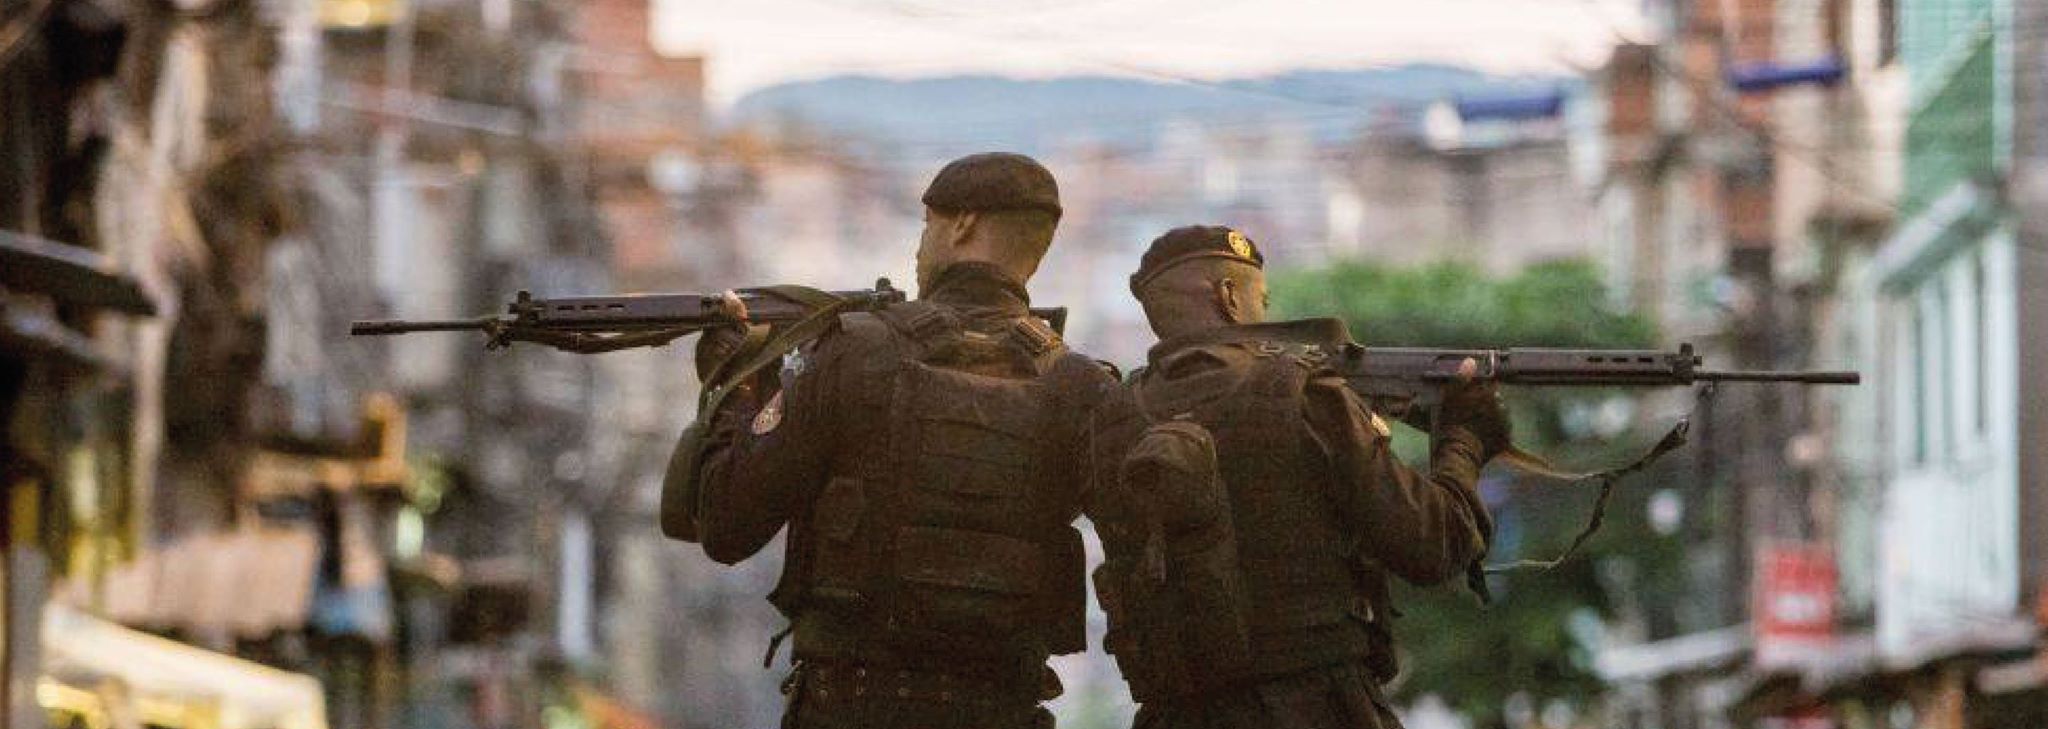 Bataillon de forces de police especiale BOPE, en patrouille dans une favela de Rio de Janeiro - Crédit DR